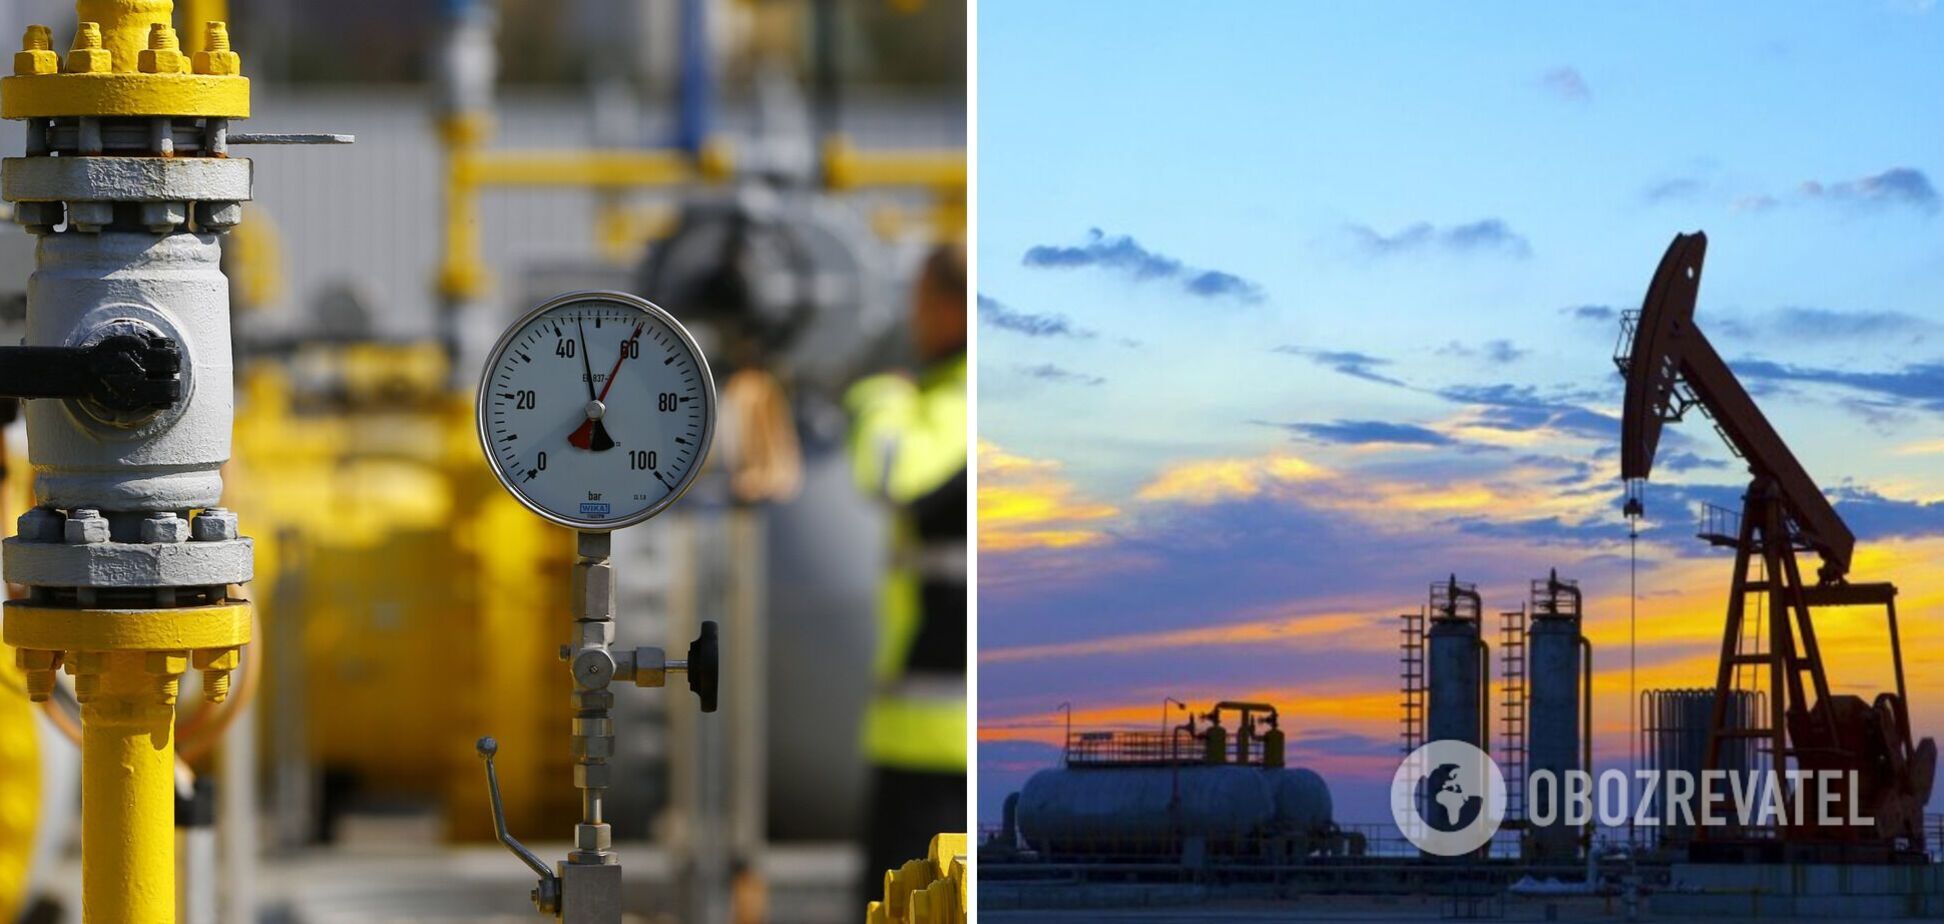 Увеличение ренты на газ снизит инвестиции и объемы газодобычи, – экс-нардеп